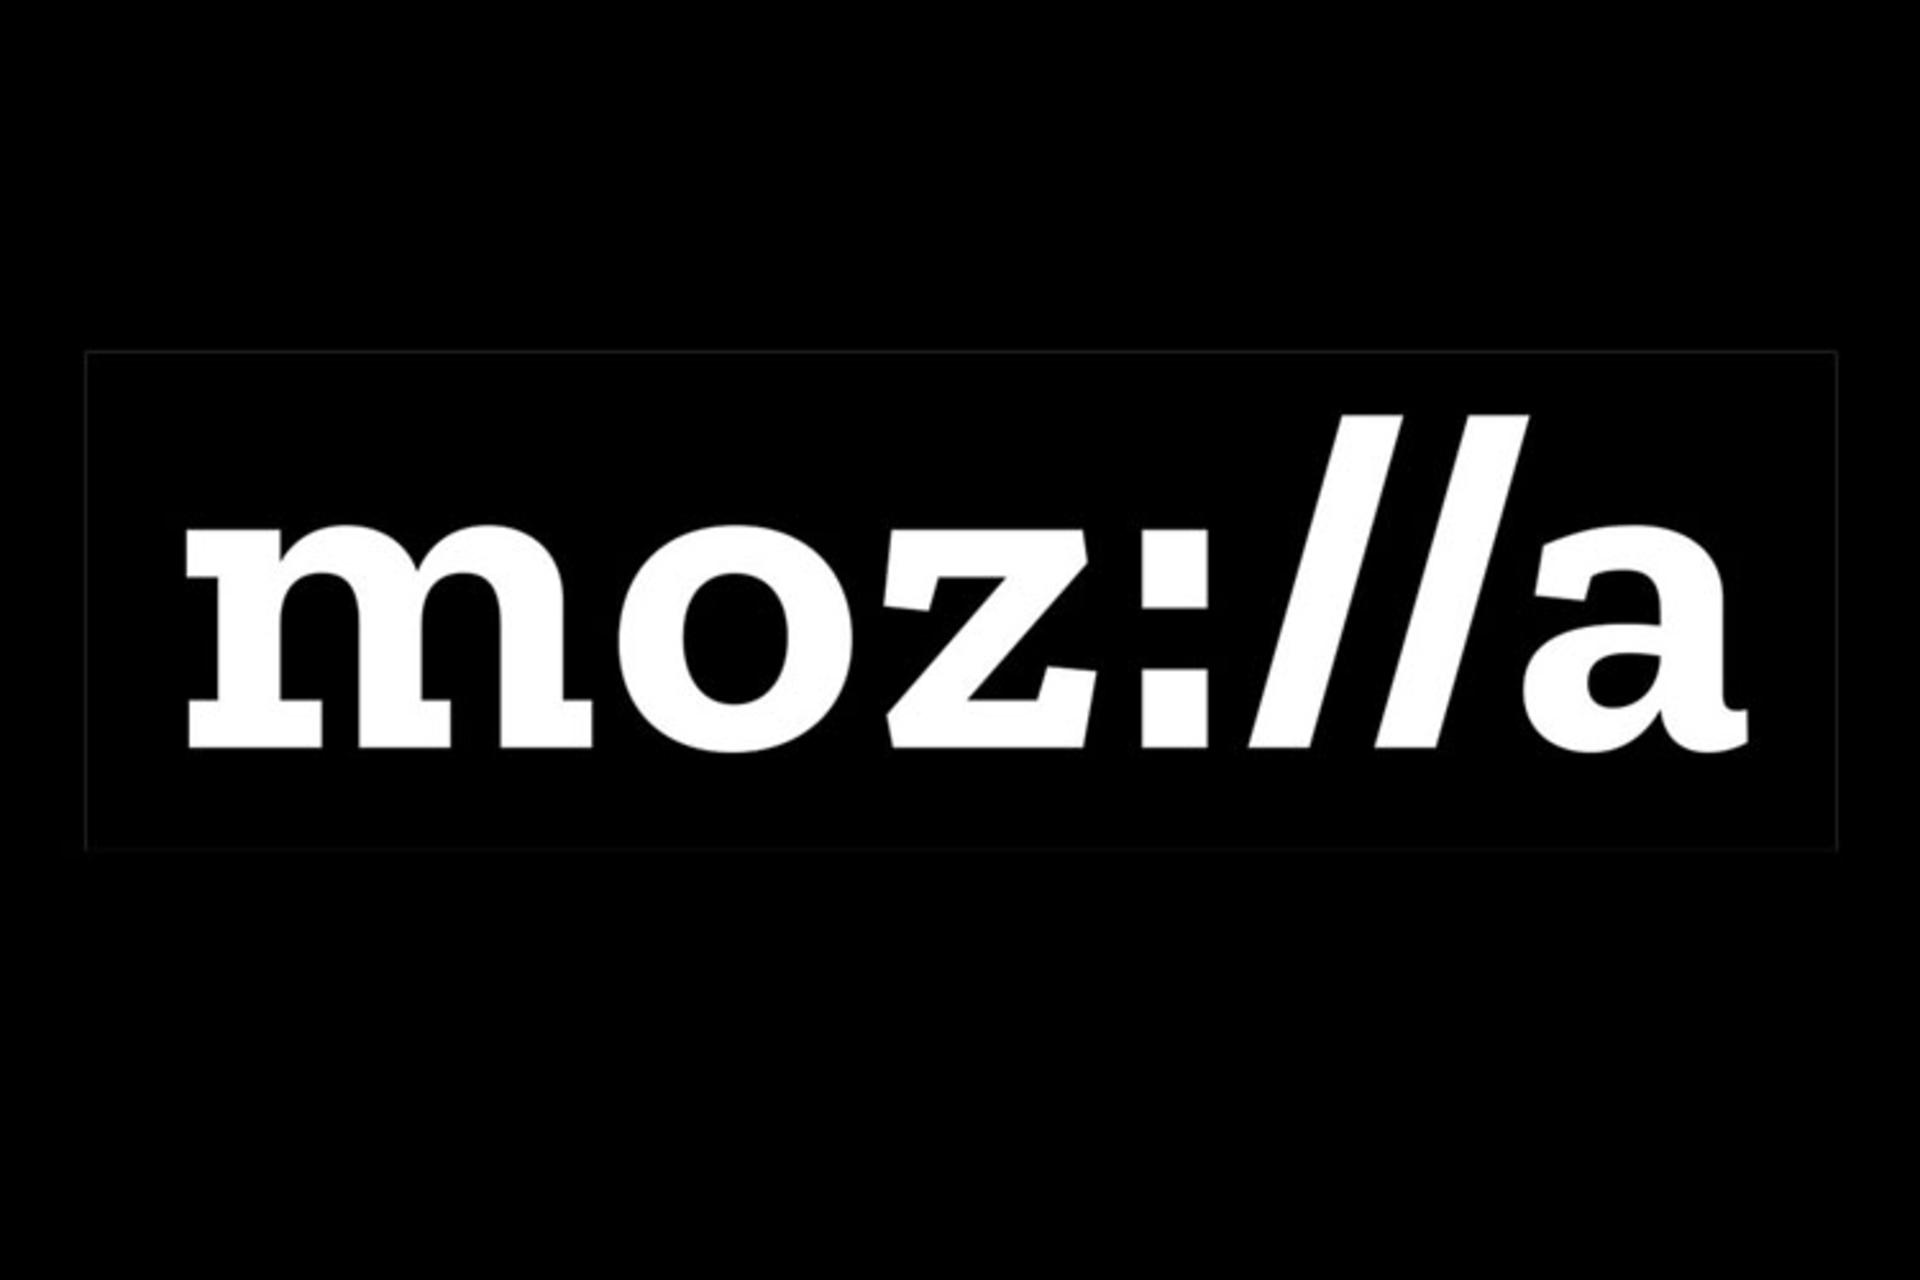 مرجع متخصصين ايران موزيلا / Mozilla